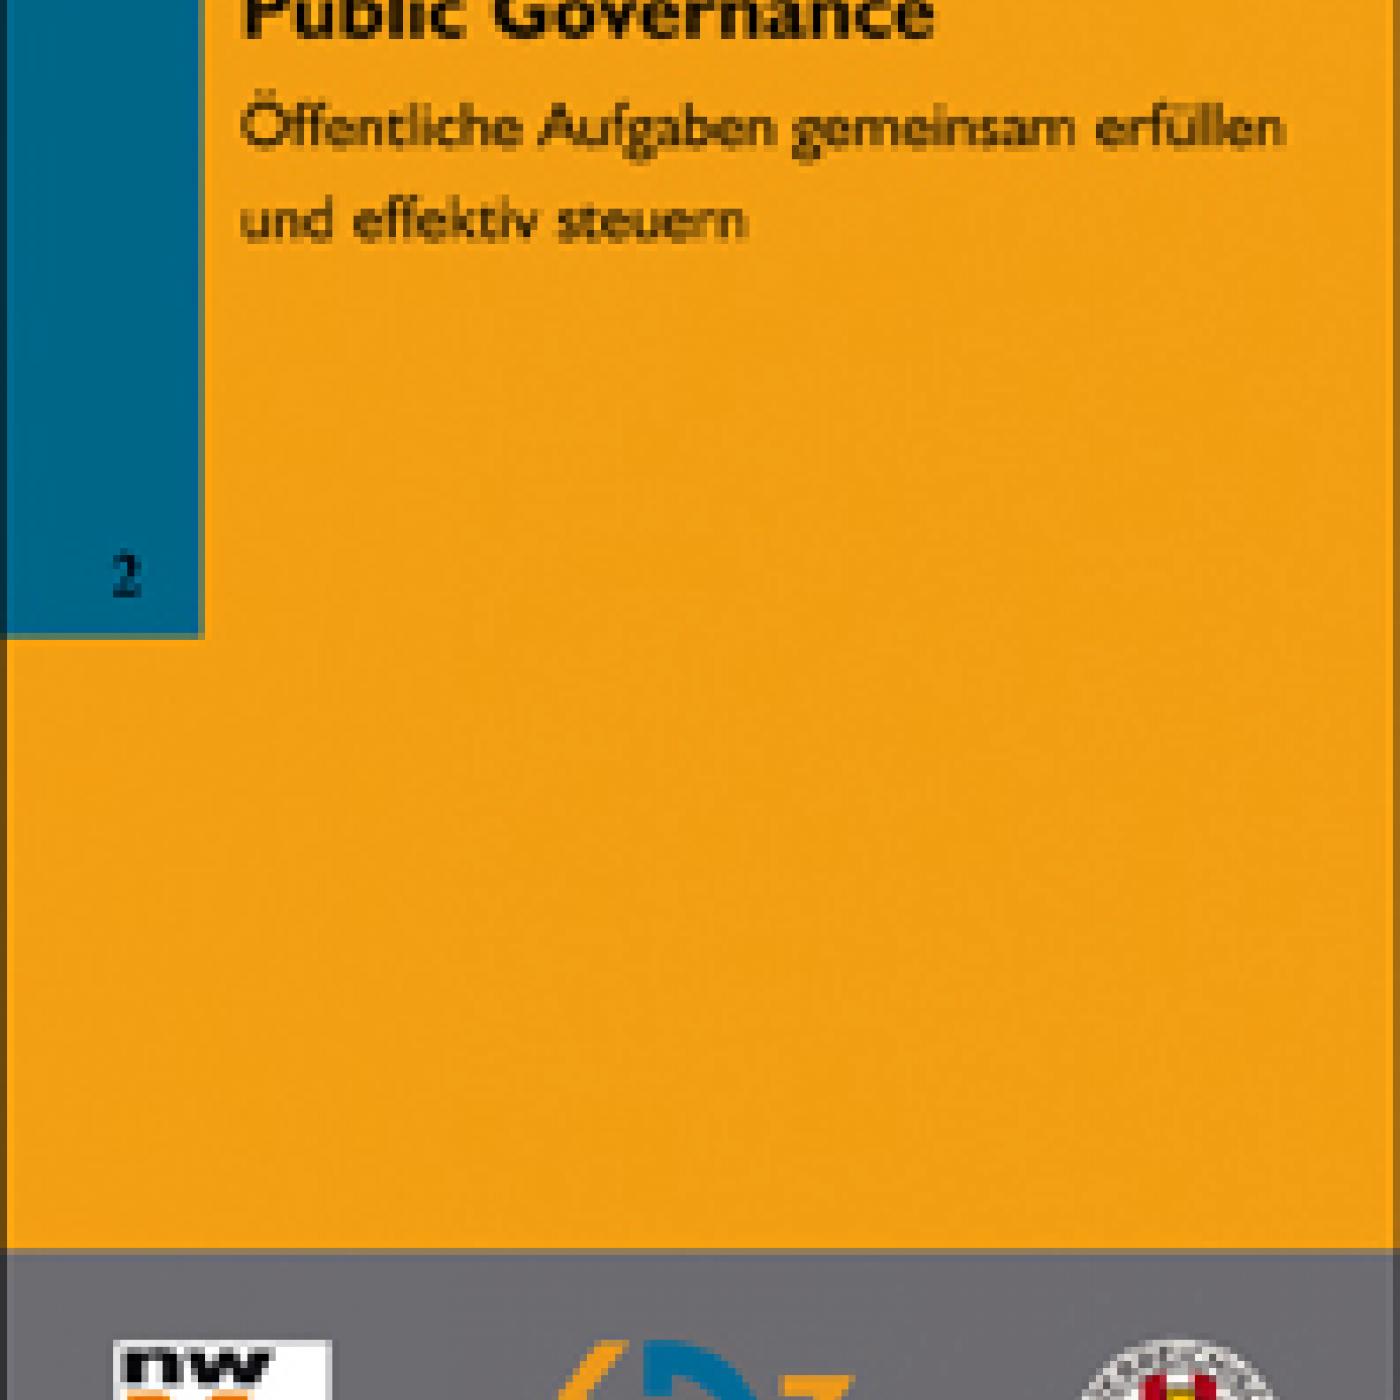 Titelseite Band 2: Public Governance - Öffentliche Aufgaben gemeinsam erfüllen und effektiv steuern